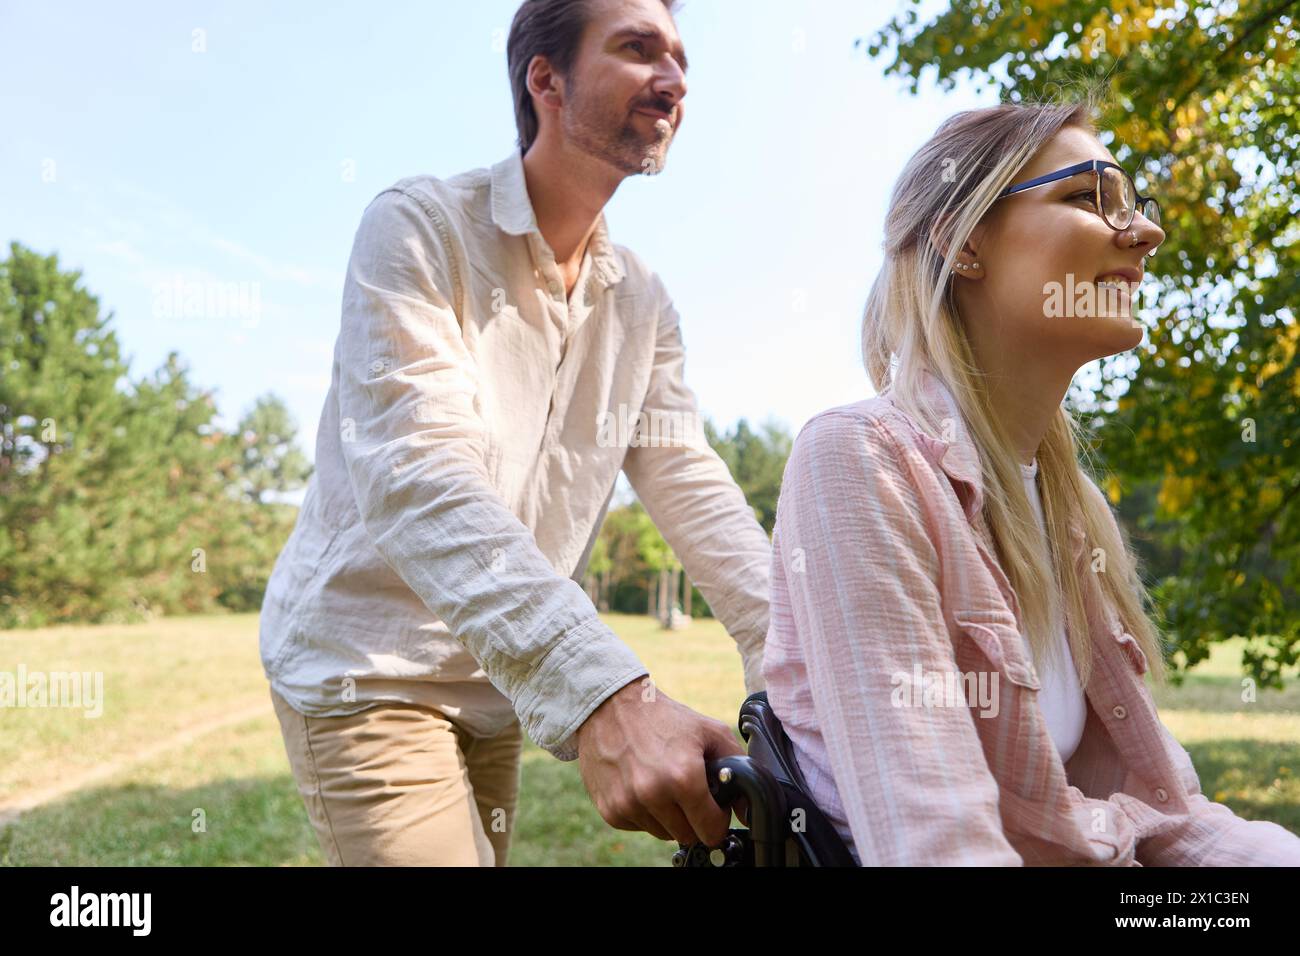 Ein Moment der Einbeziehung im Freien mit einer freudigen Frau im Rollstuhl, die von einem Mann in einer ruhigen Parklandschaft unterstützt wird. Stockfoto